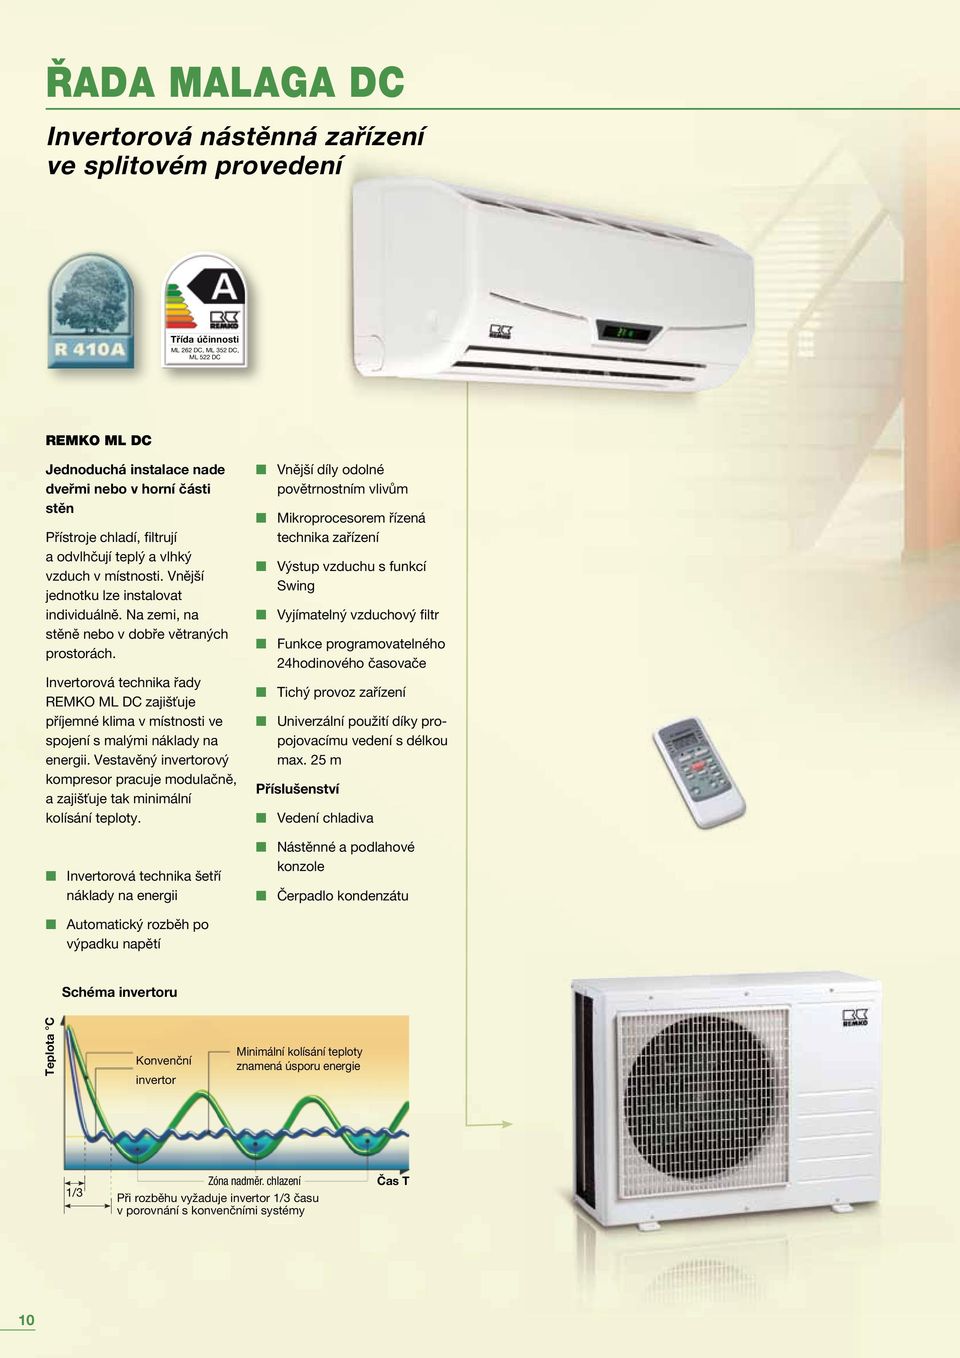 Invertorová technika řady REMKO ML DC zajišťuje příjemné klima v místnosti ve spojení s malými náklady na energii.